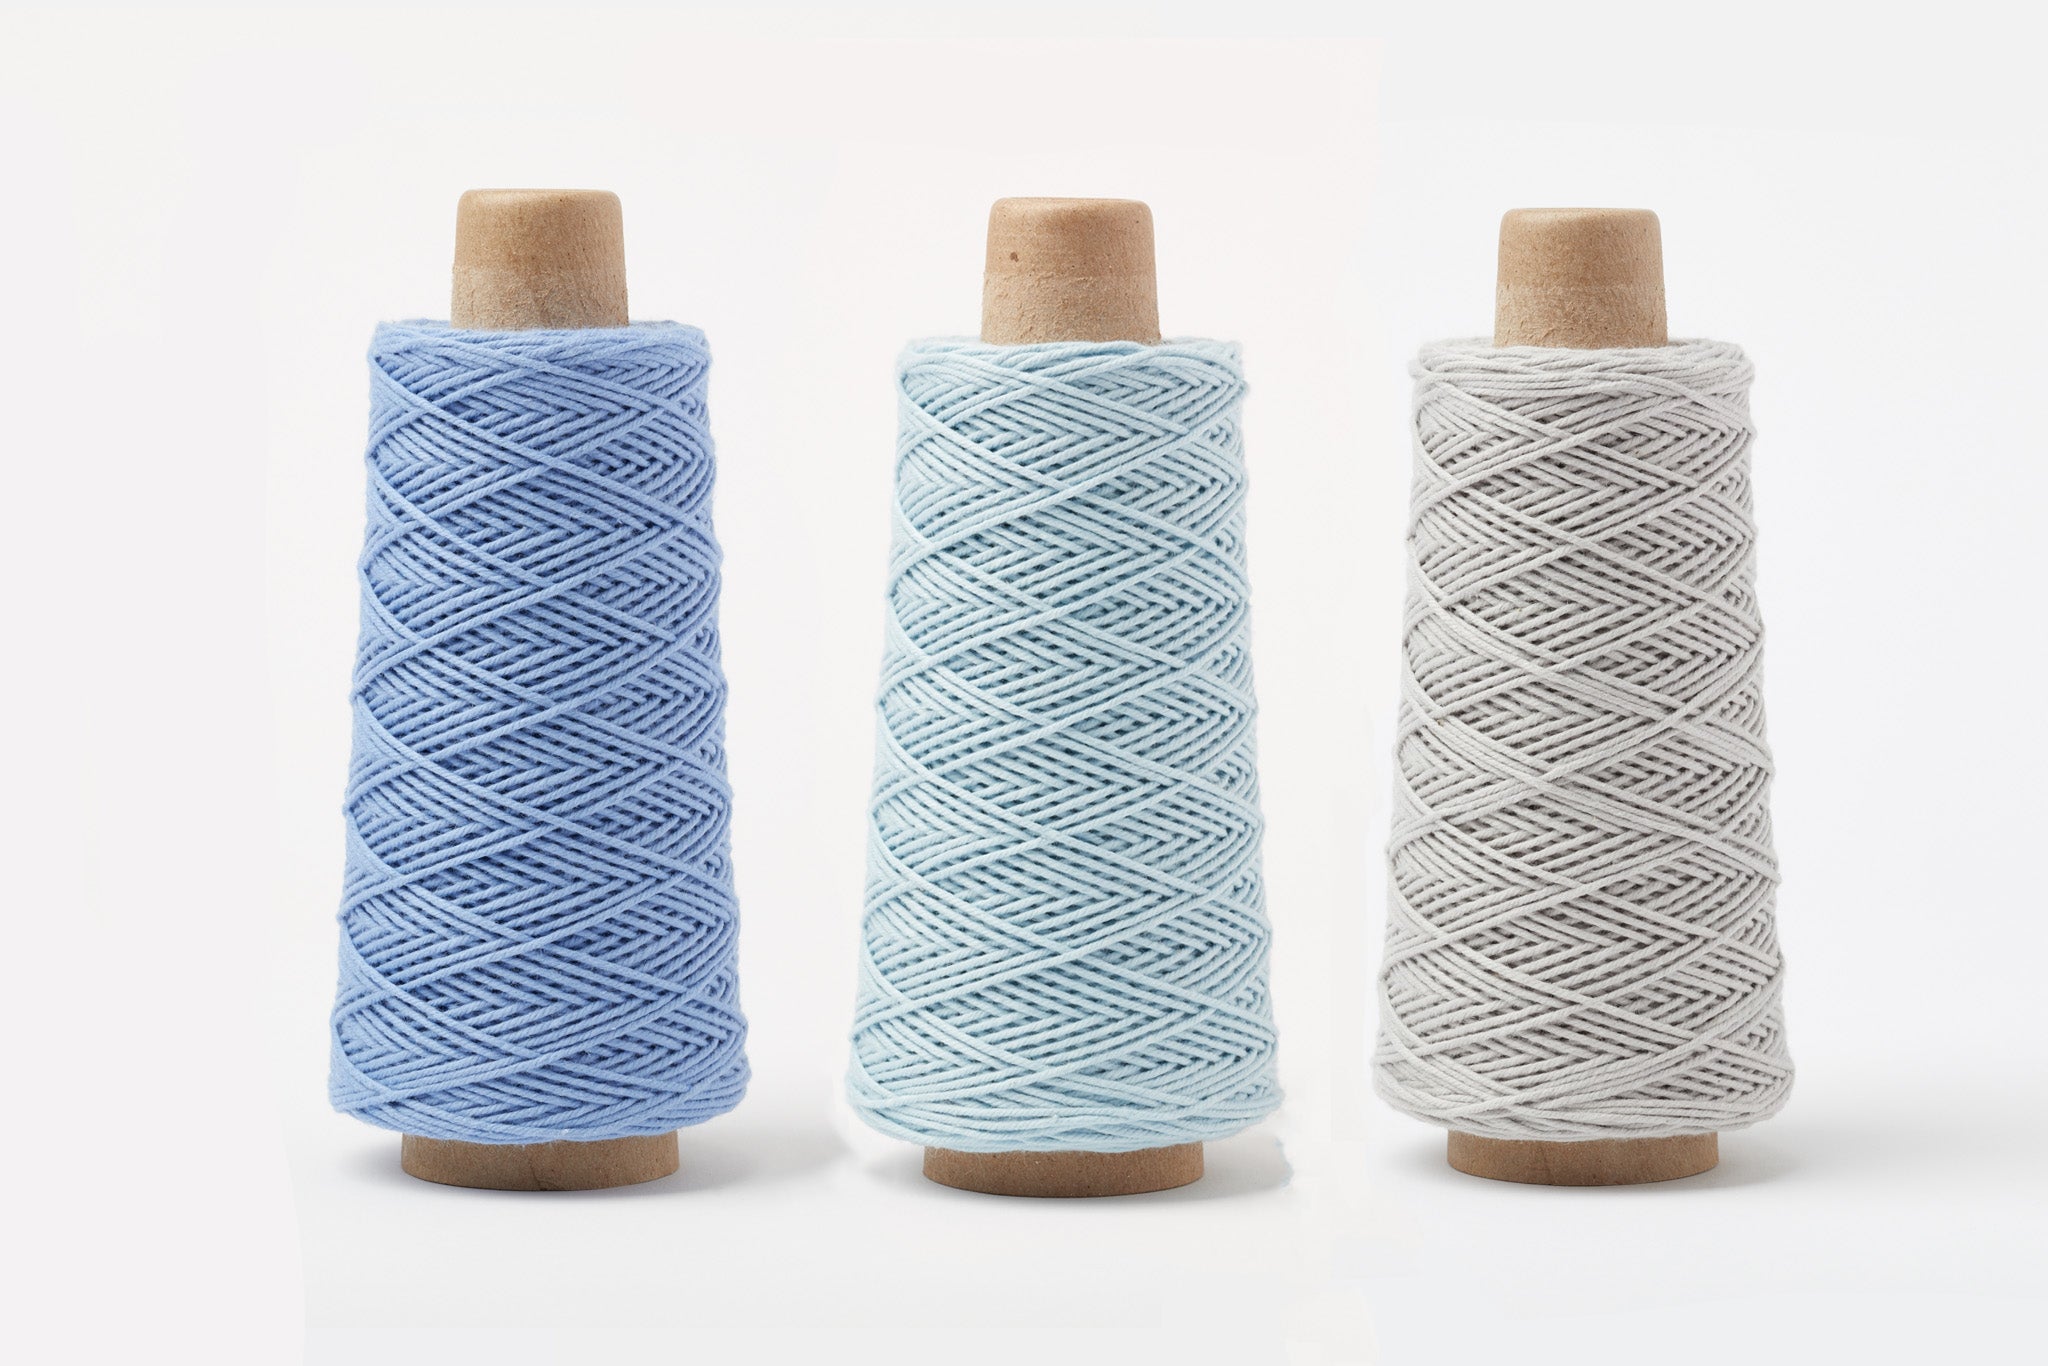 Knitting & Crochet Yarn Sampler Pack